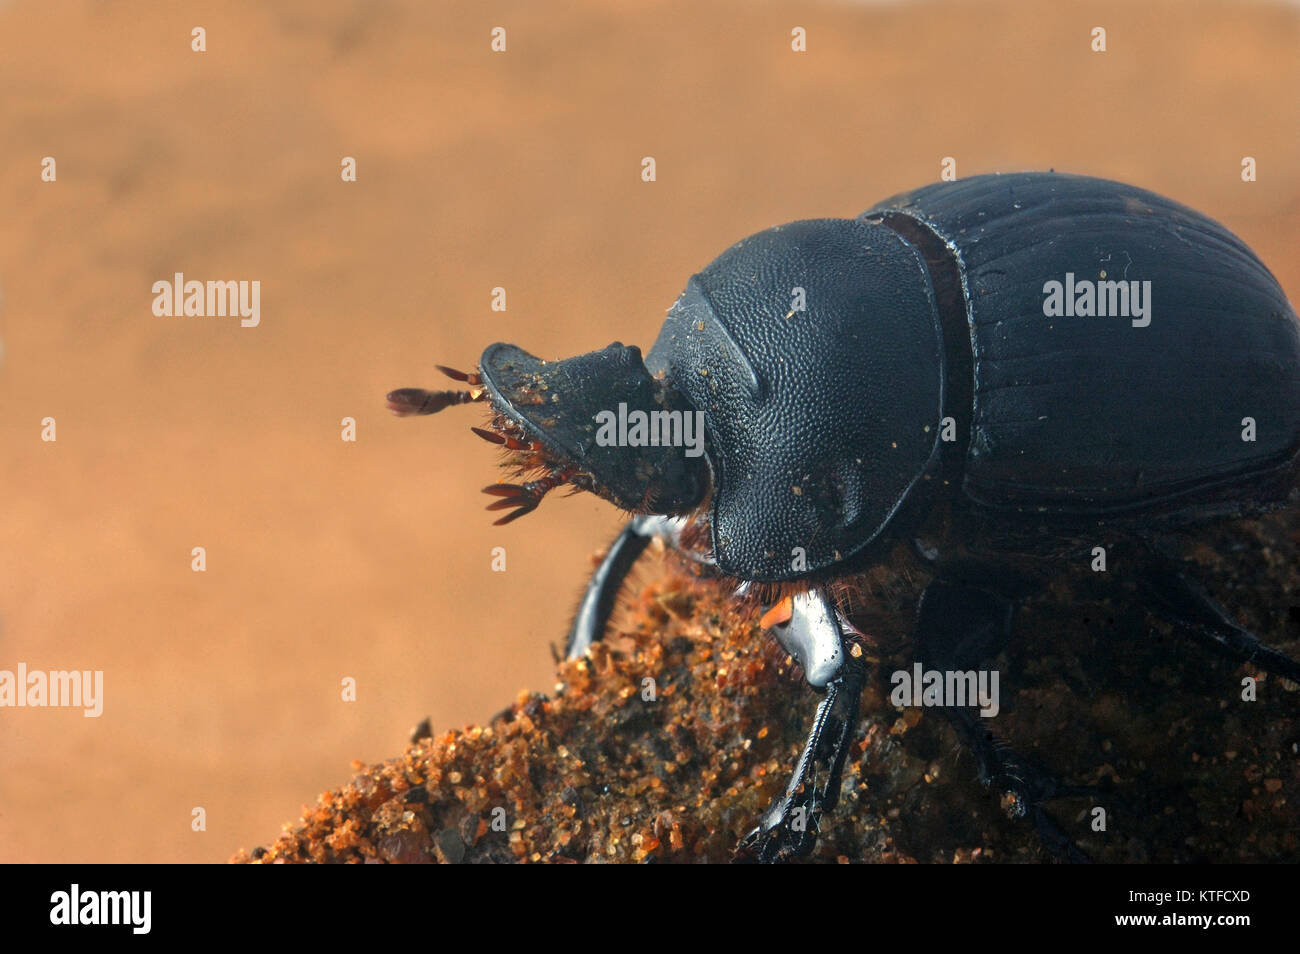 Skarabäus Käfer aus Tamil Nadu, Südindien. Dies ist einer der gemeinsamen Mistkäfer. Stockfoto